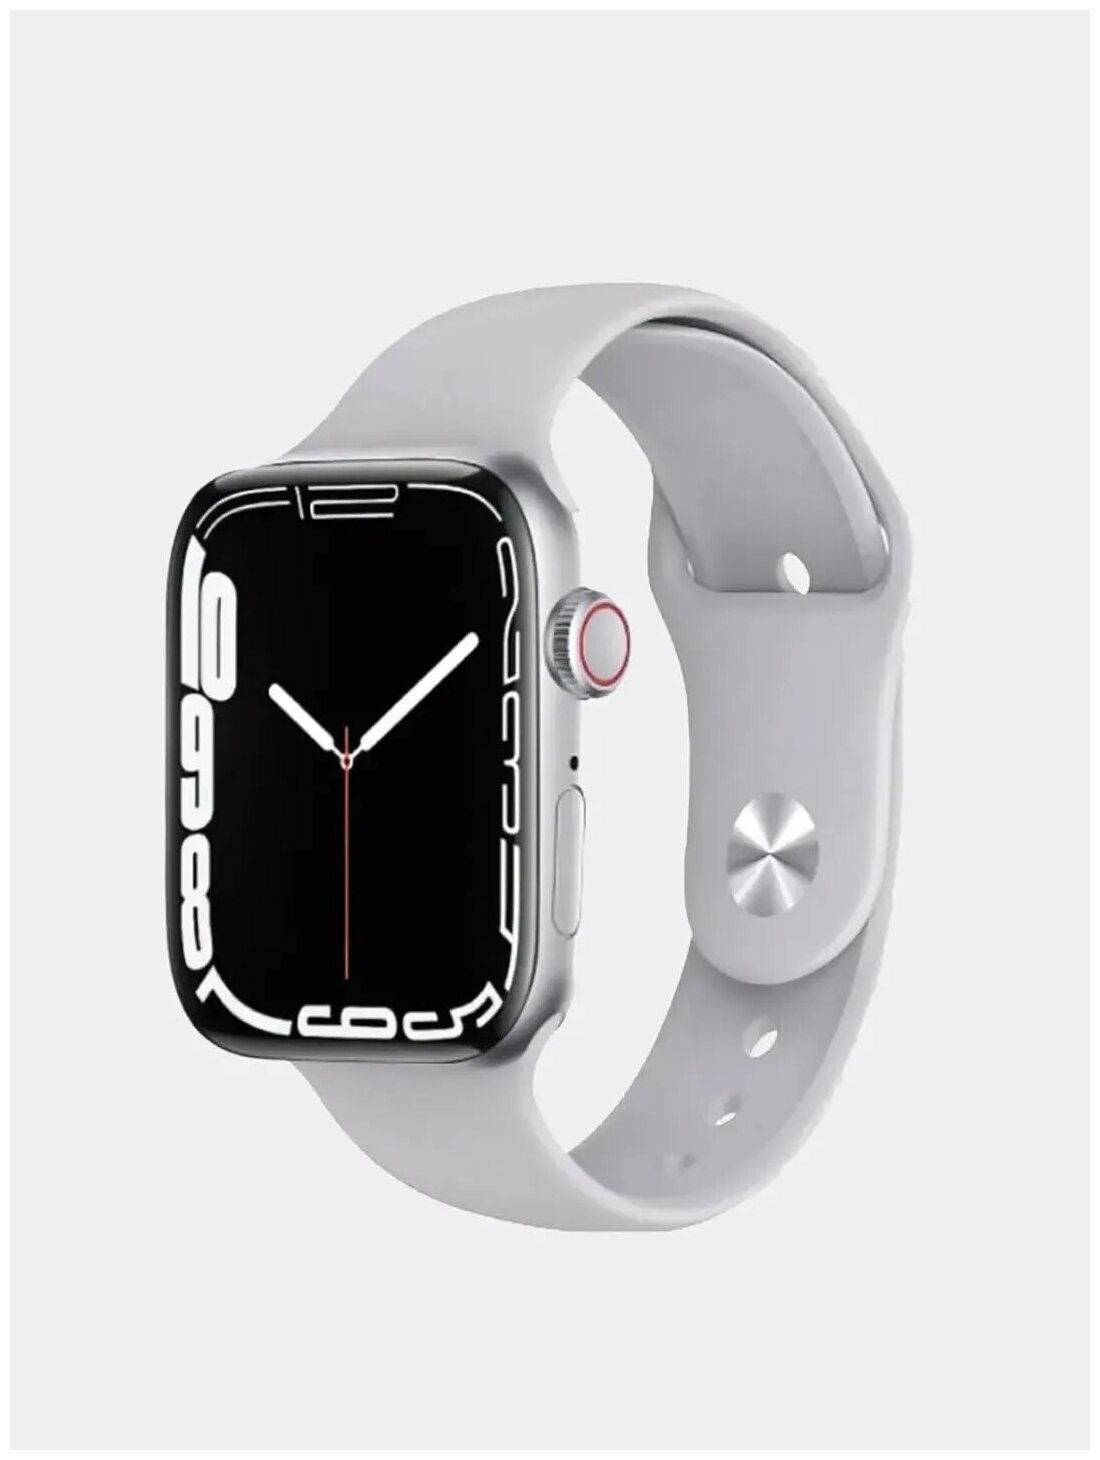 Смарт часы серебристые (iOS \ Android) / Smart часы с сенсорным экраном /Новинка.